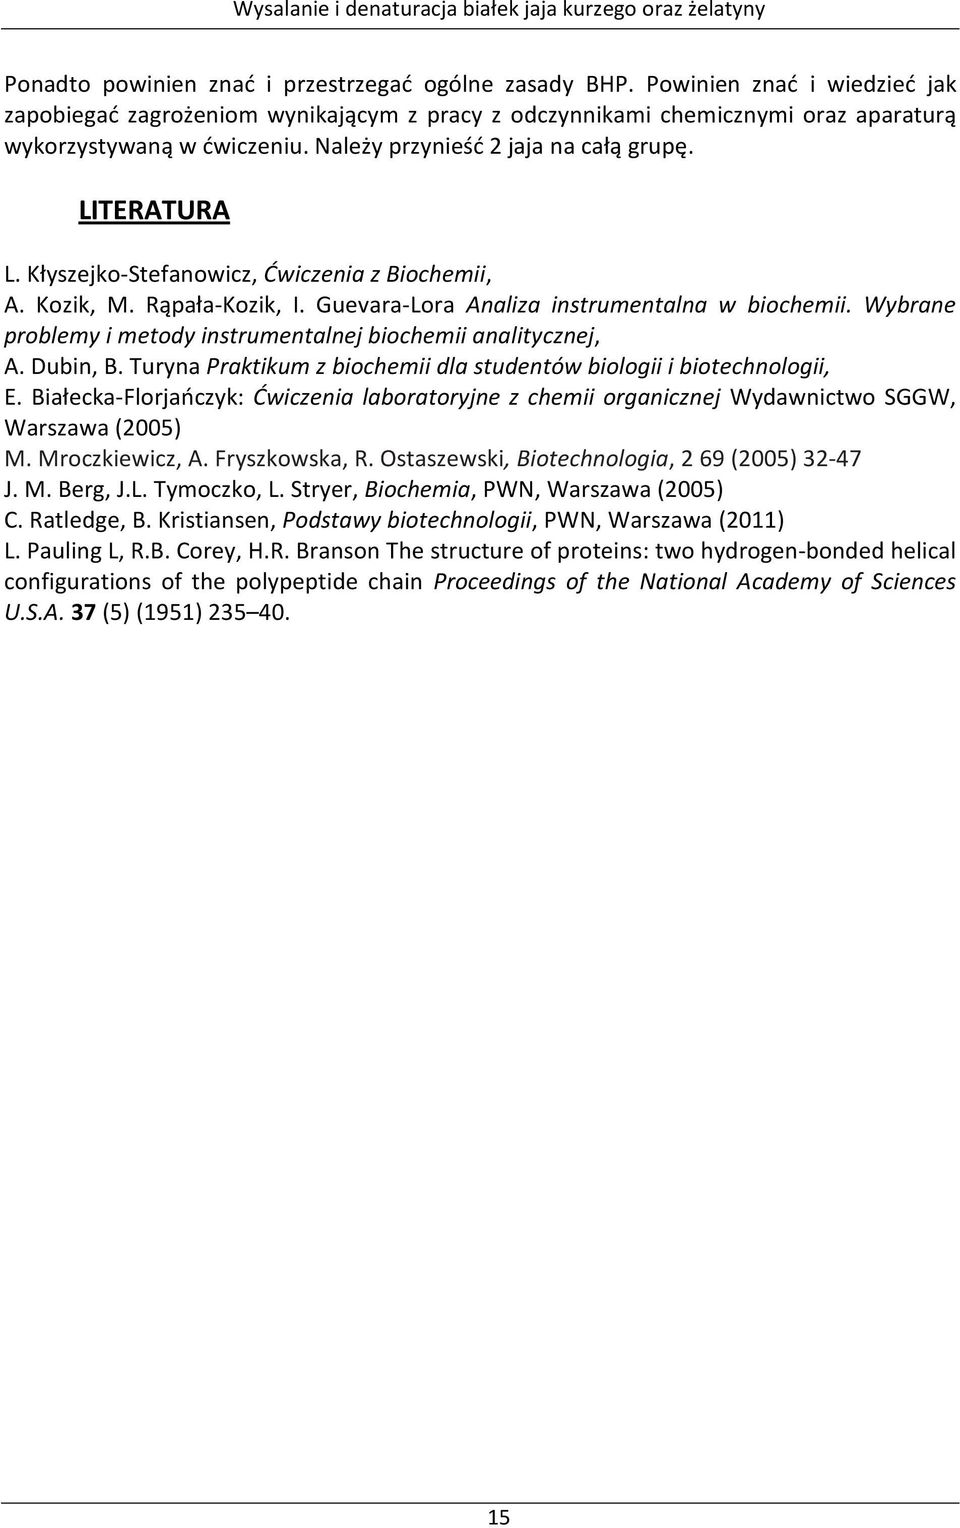 Wybrane problemy i metody instrumentalnej biochemii analitycznej, A. Dubin, B. Turyna Praktikum z biochemii dla studentów biologii i biotechnologii, E.